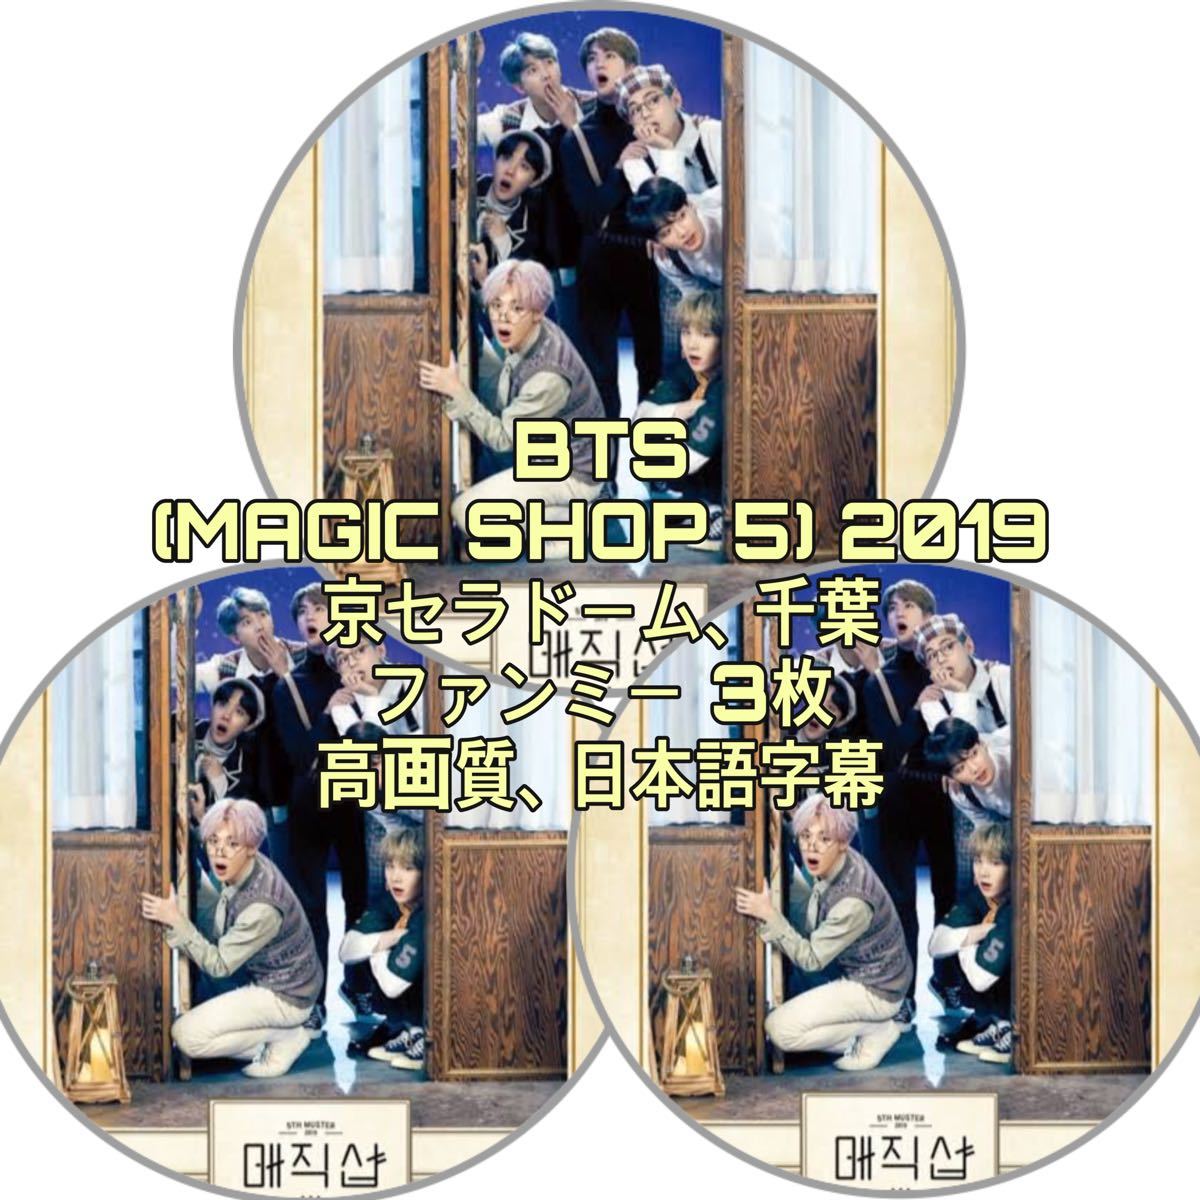 BTS DVD (MAGIC SHOP 5) 2019 千葉 京セラドーム ファンミー ペンミ 3